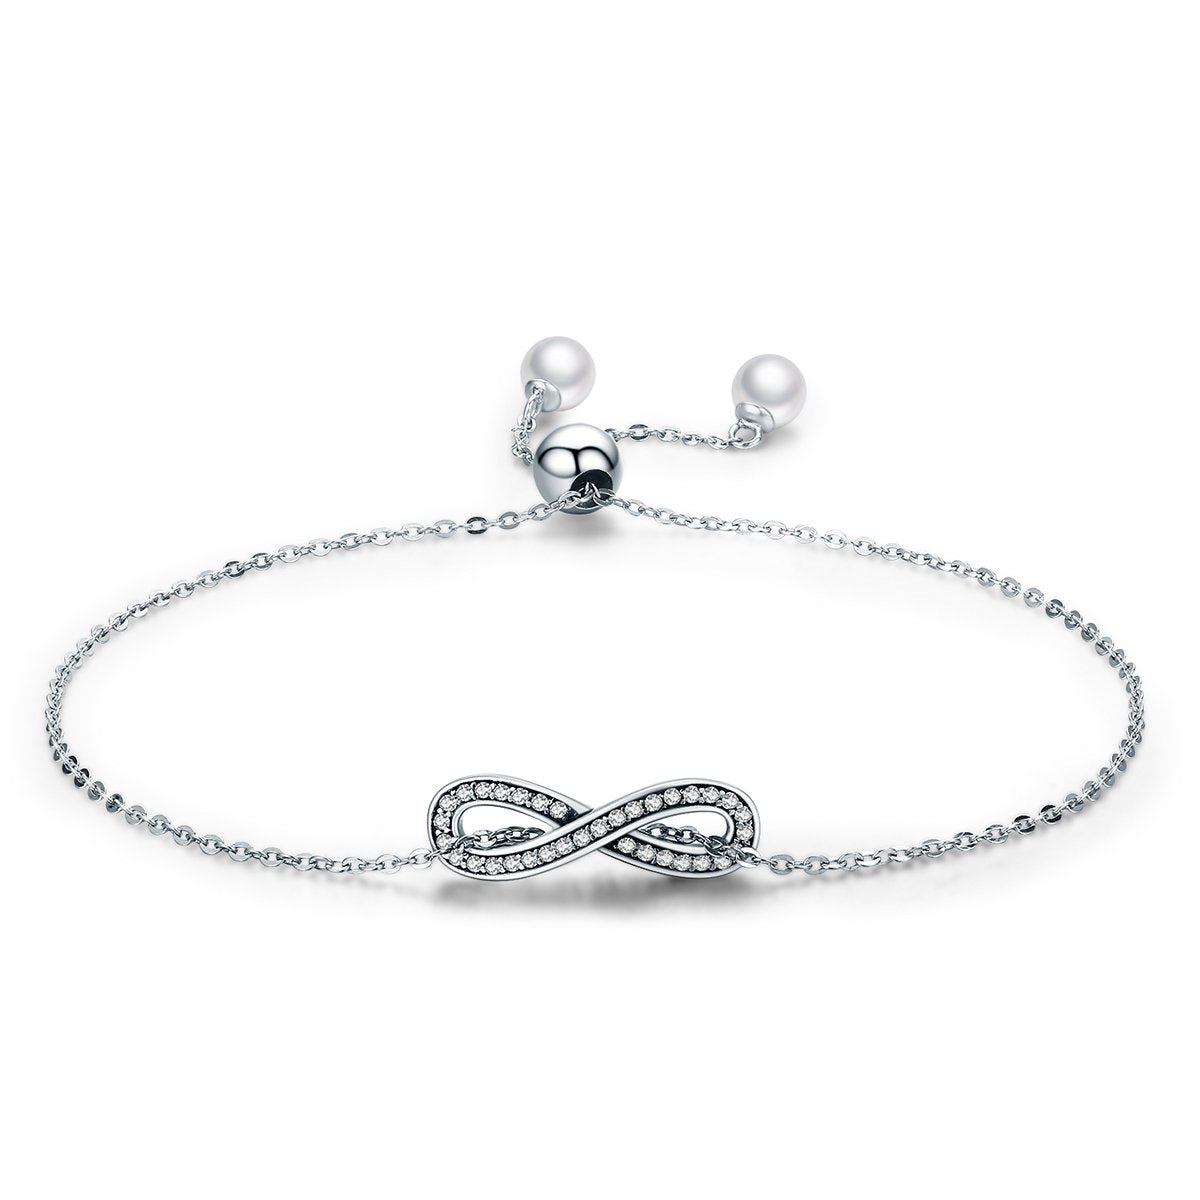 Infinity Love Elegant 925 Sterling Silver Bracelet - Aisllin Jewelry